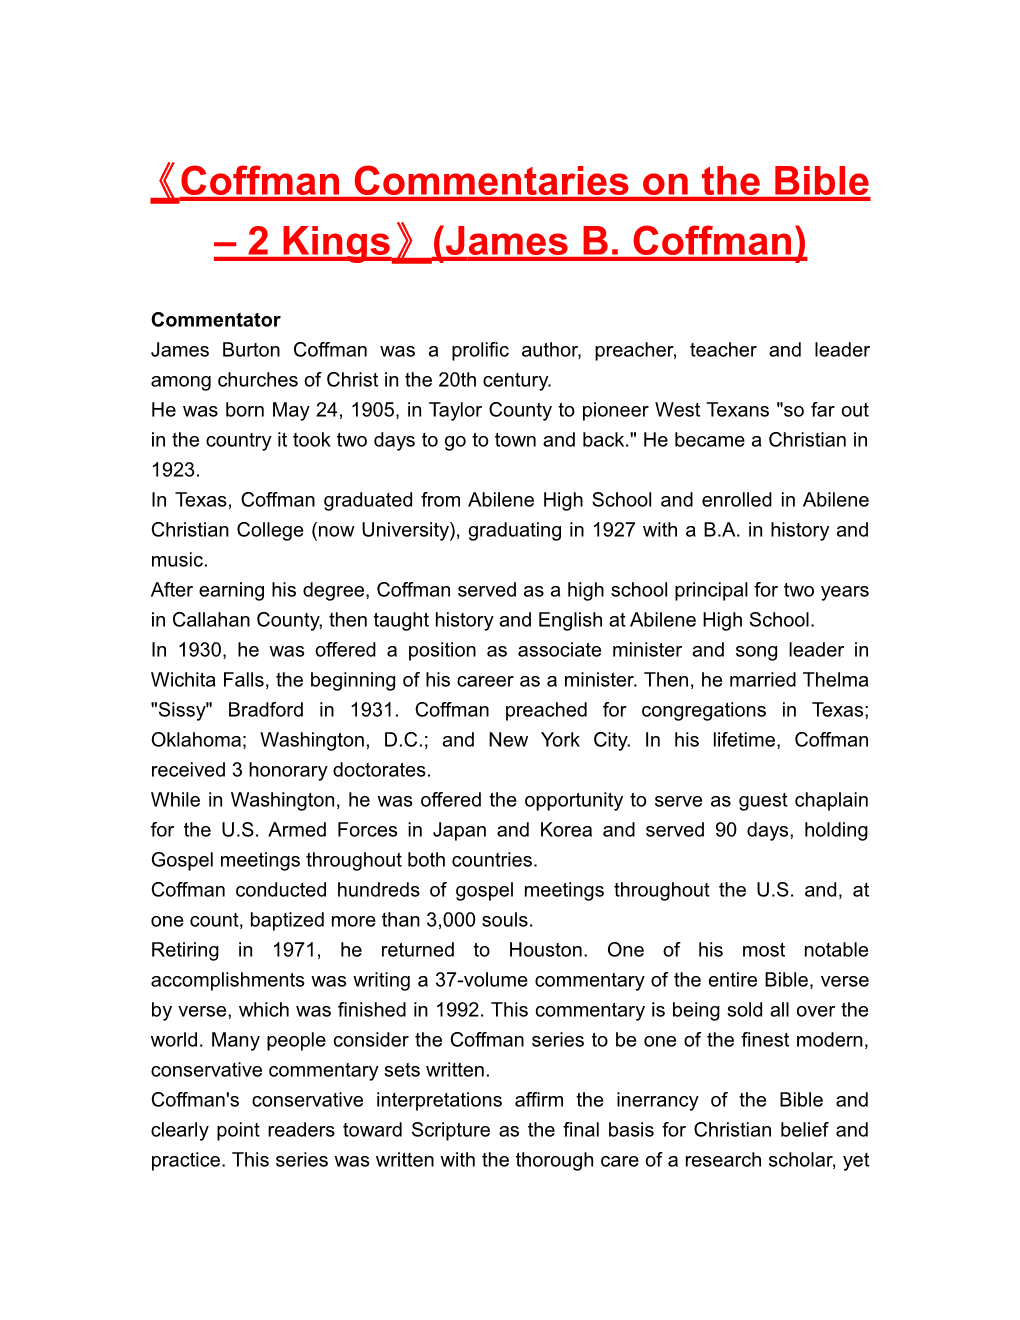 Coffman Commentaries on the Bible 2 Kings (James B. Coffman)